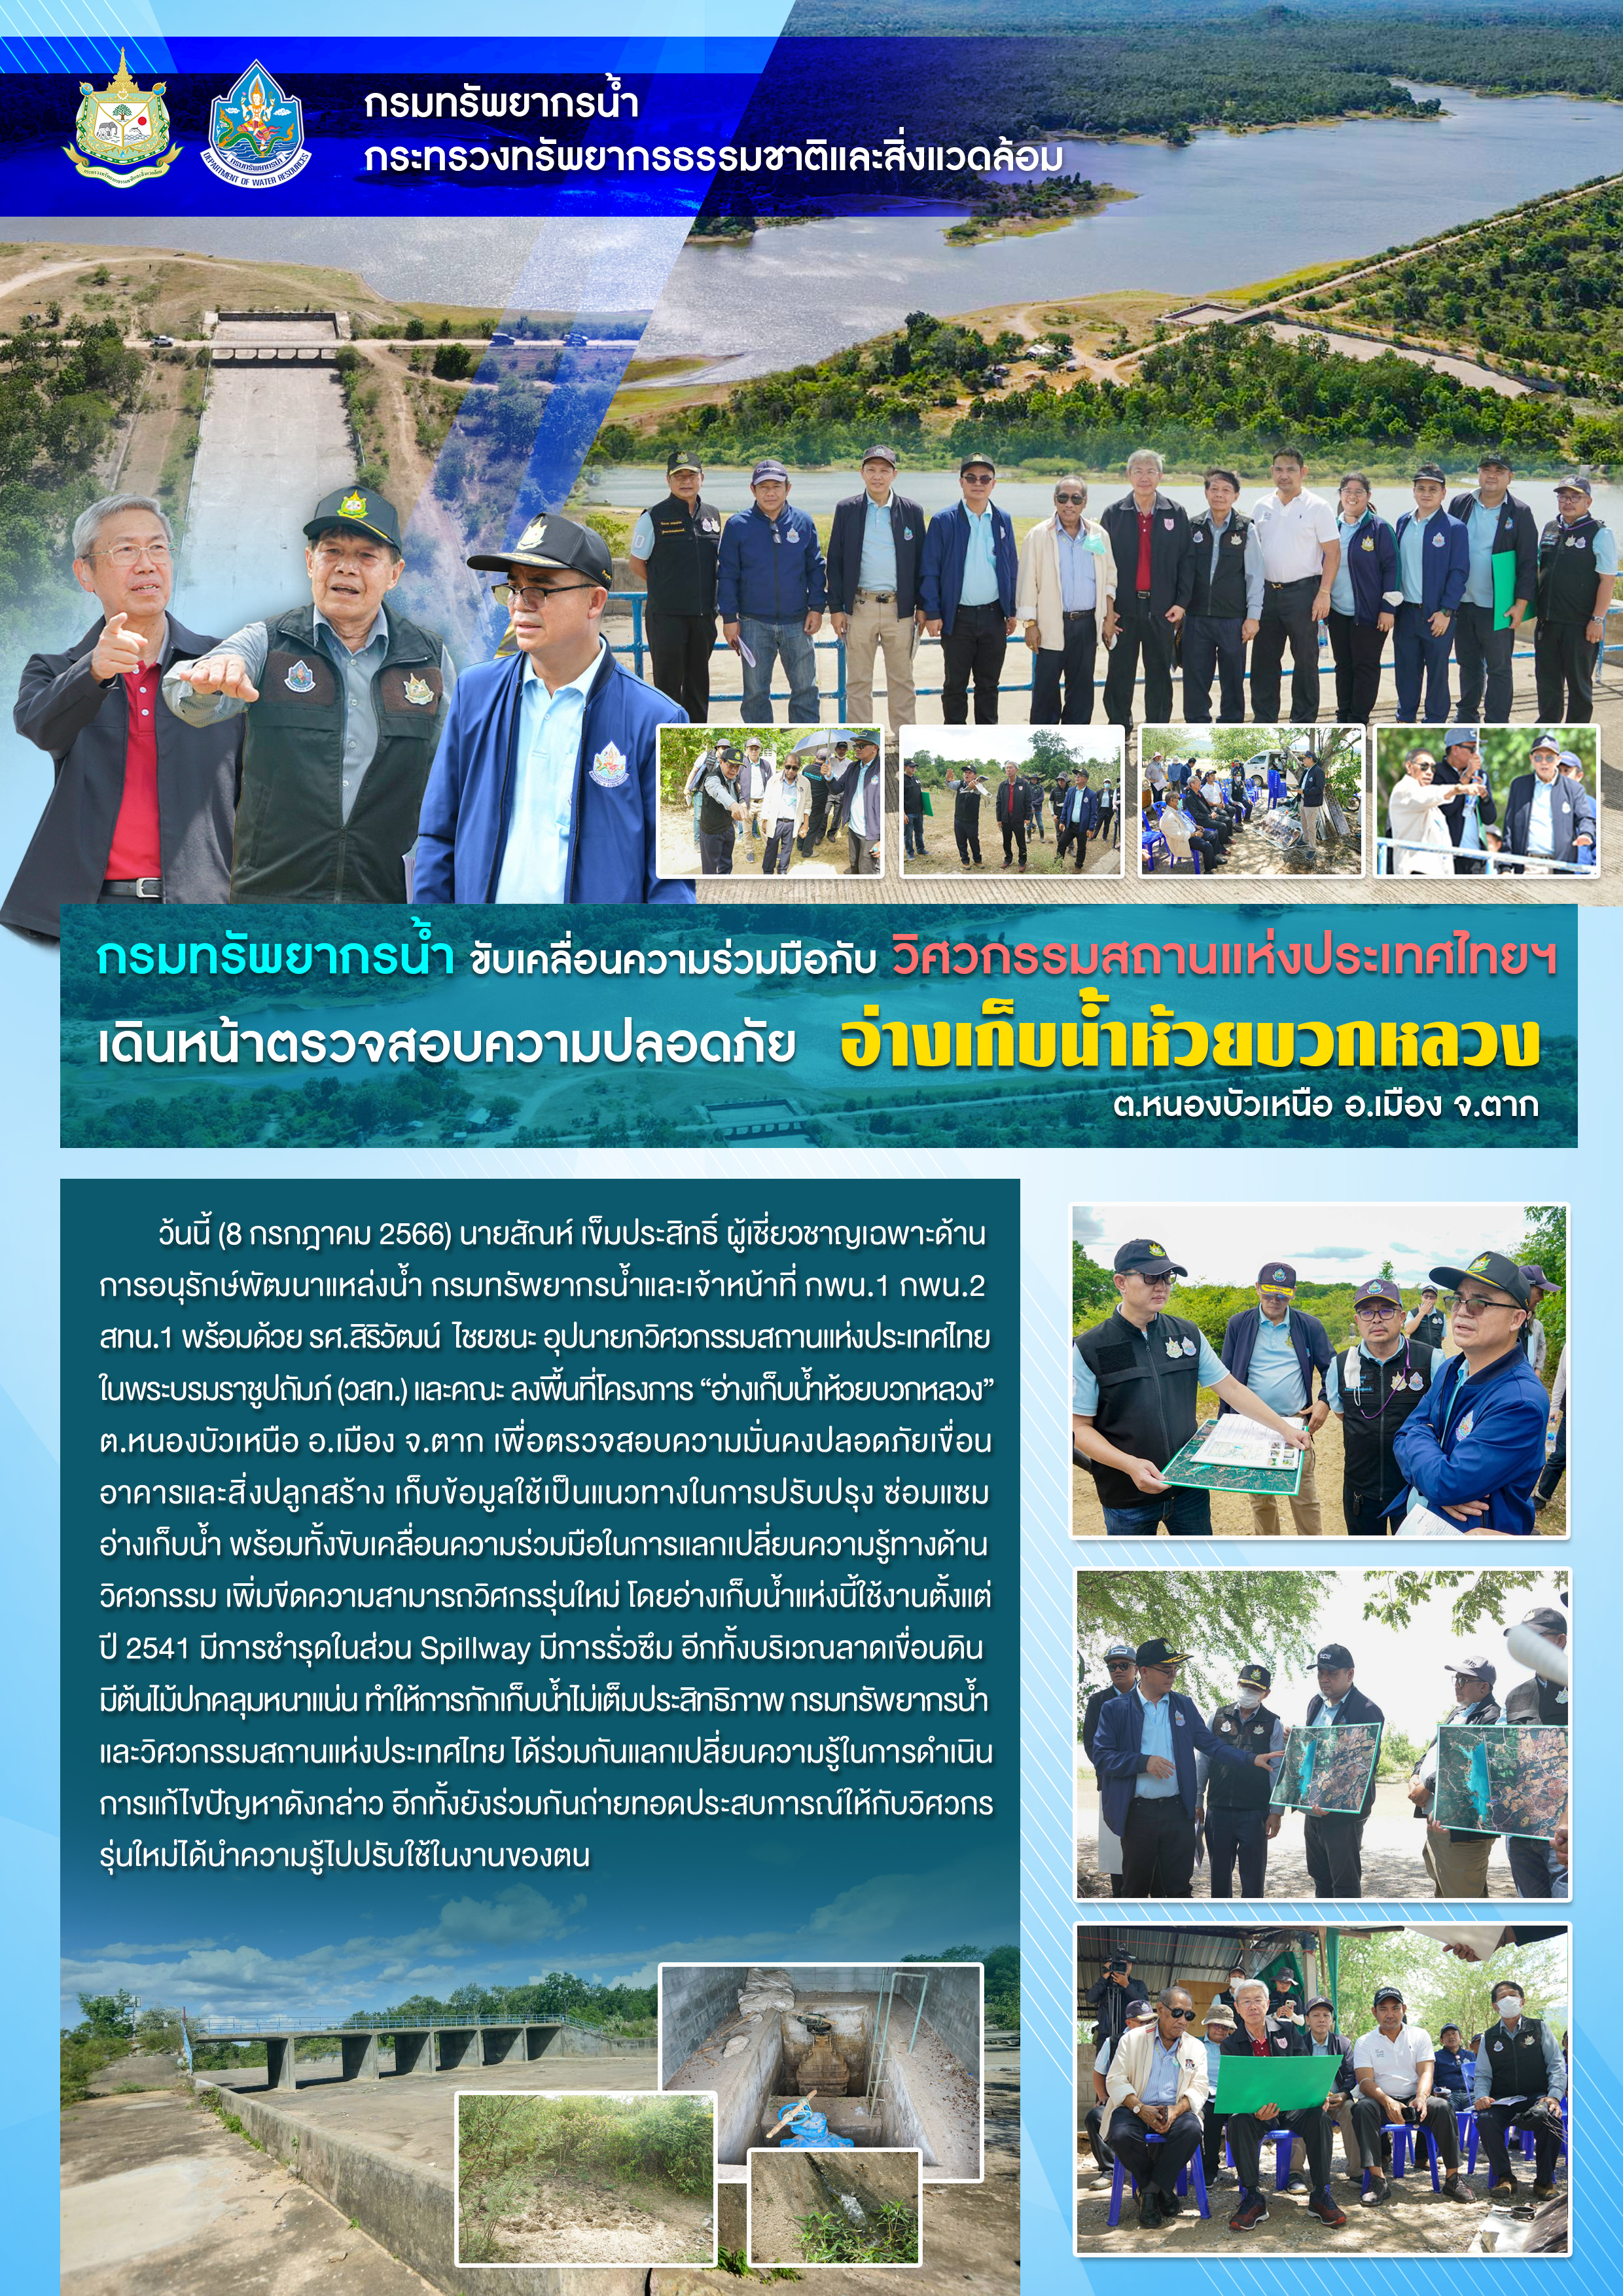 กรมทรัพยากรน้ำขับเคลื่อนความร่วมมือกับวิศวกรรมสถานแห่งประเทศไทยฯเดินหน้าตรวจความปลอดภัย อ่างเก็บน้ำห้วยบวกหลวง จ.ตาก